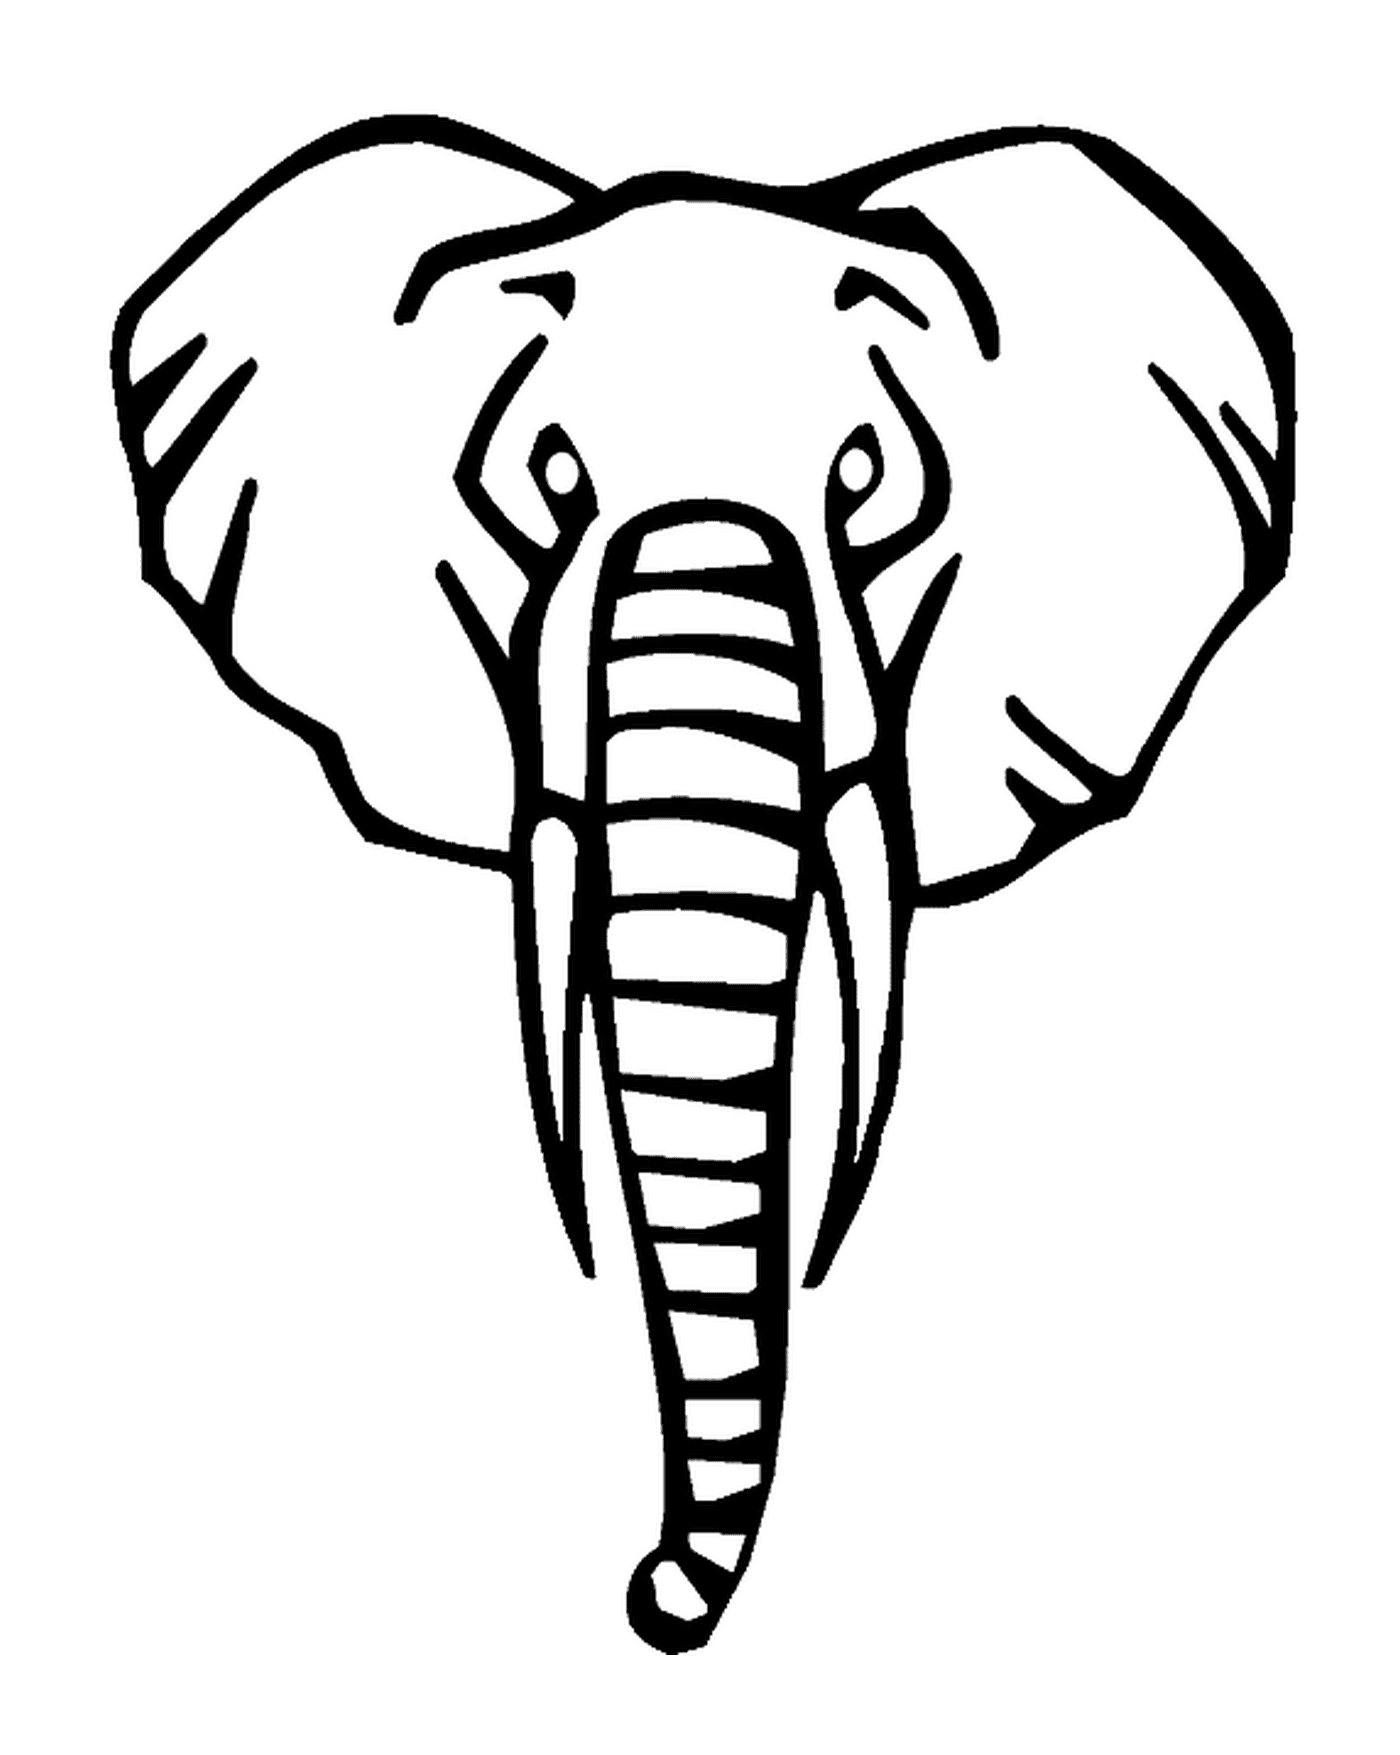  Голова переднего слона 